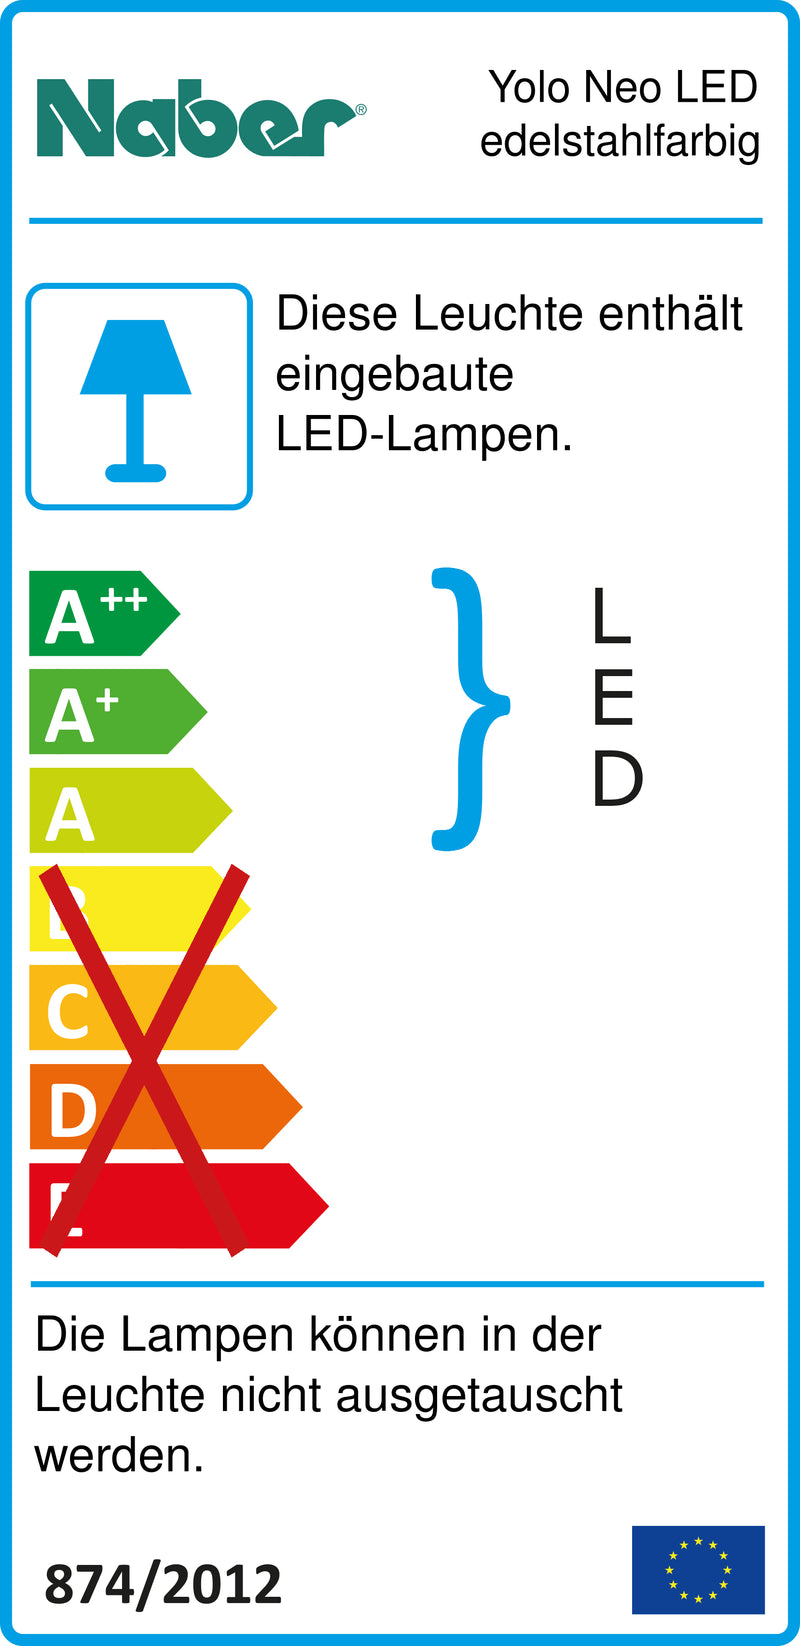 E-Label zu Zeichnung zu Yolo Neo LED edelstahlfarbig als Variante Set-5, 3000 K warmweiß von Naber GmbH in der Kategorie Lichttechnik in Österreich auf conceptshop.at